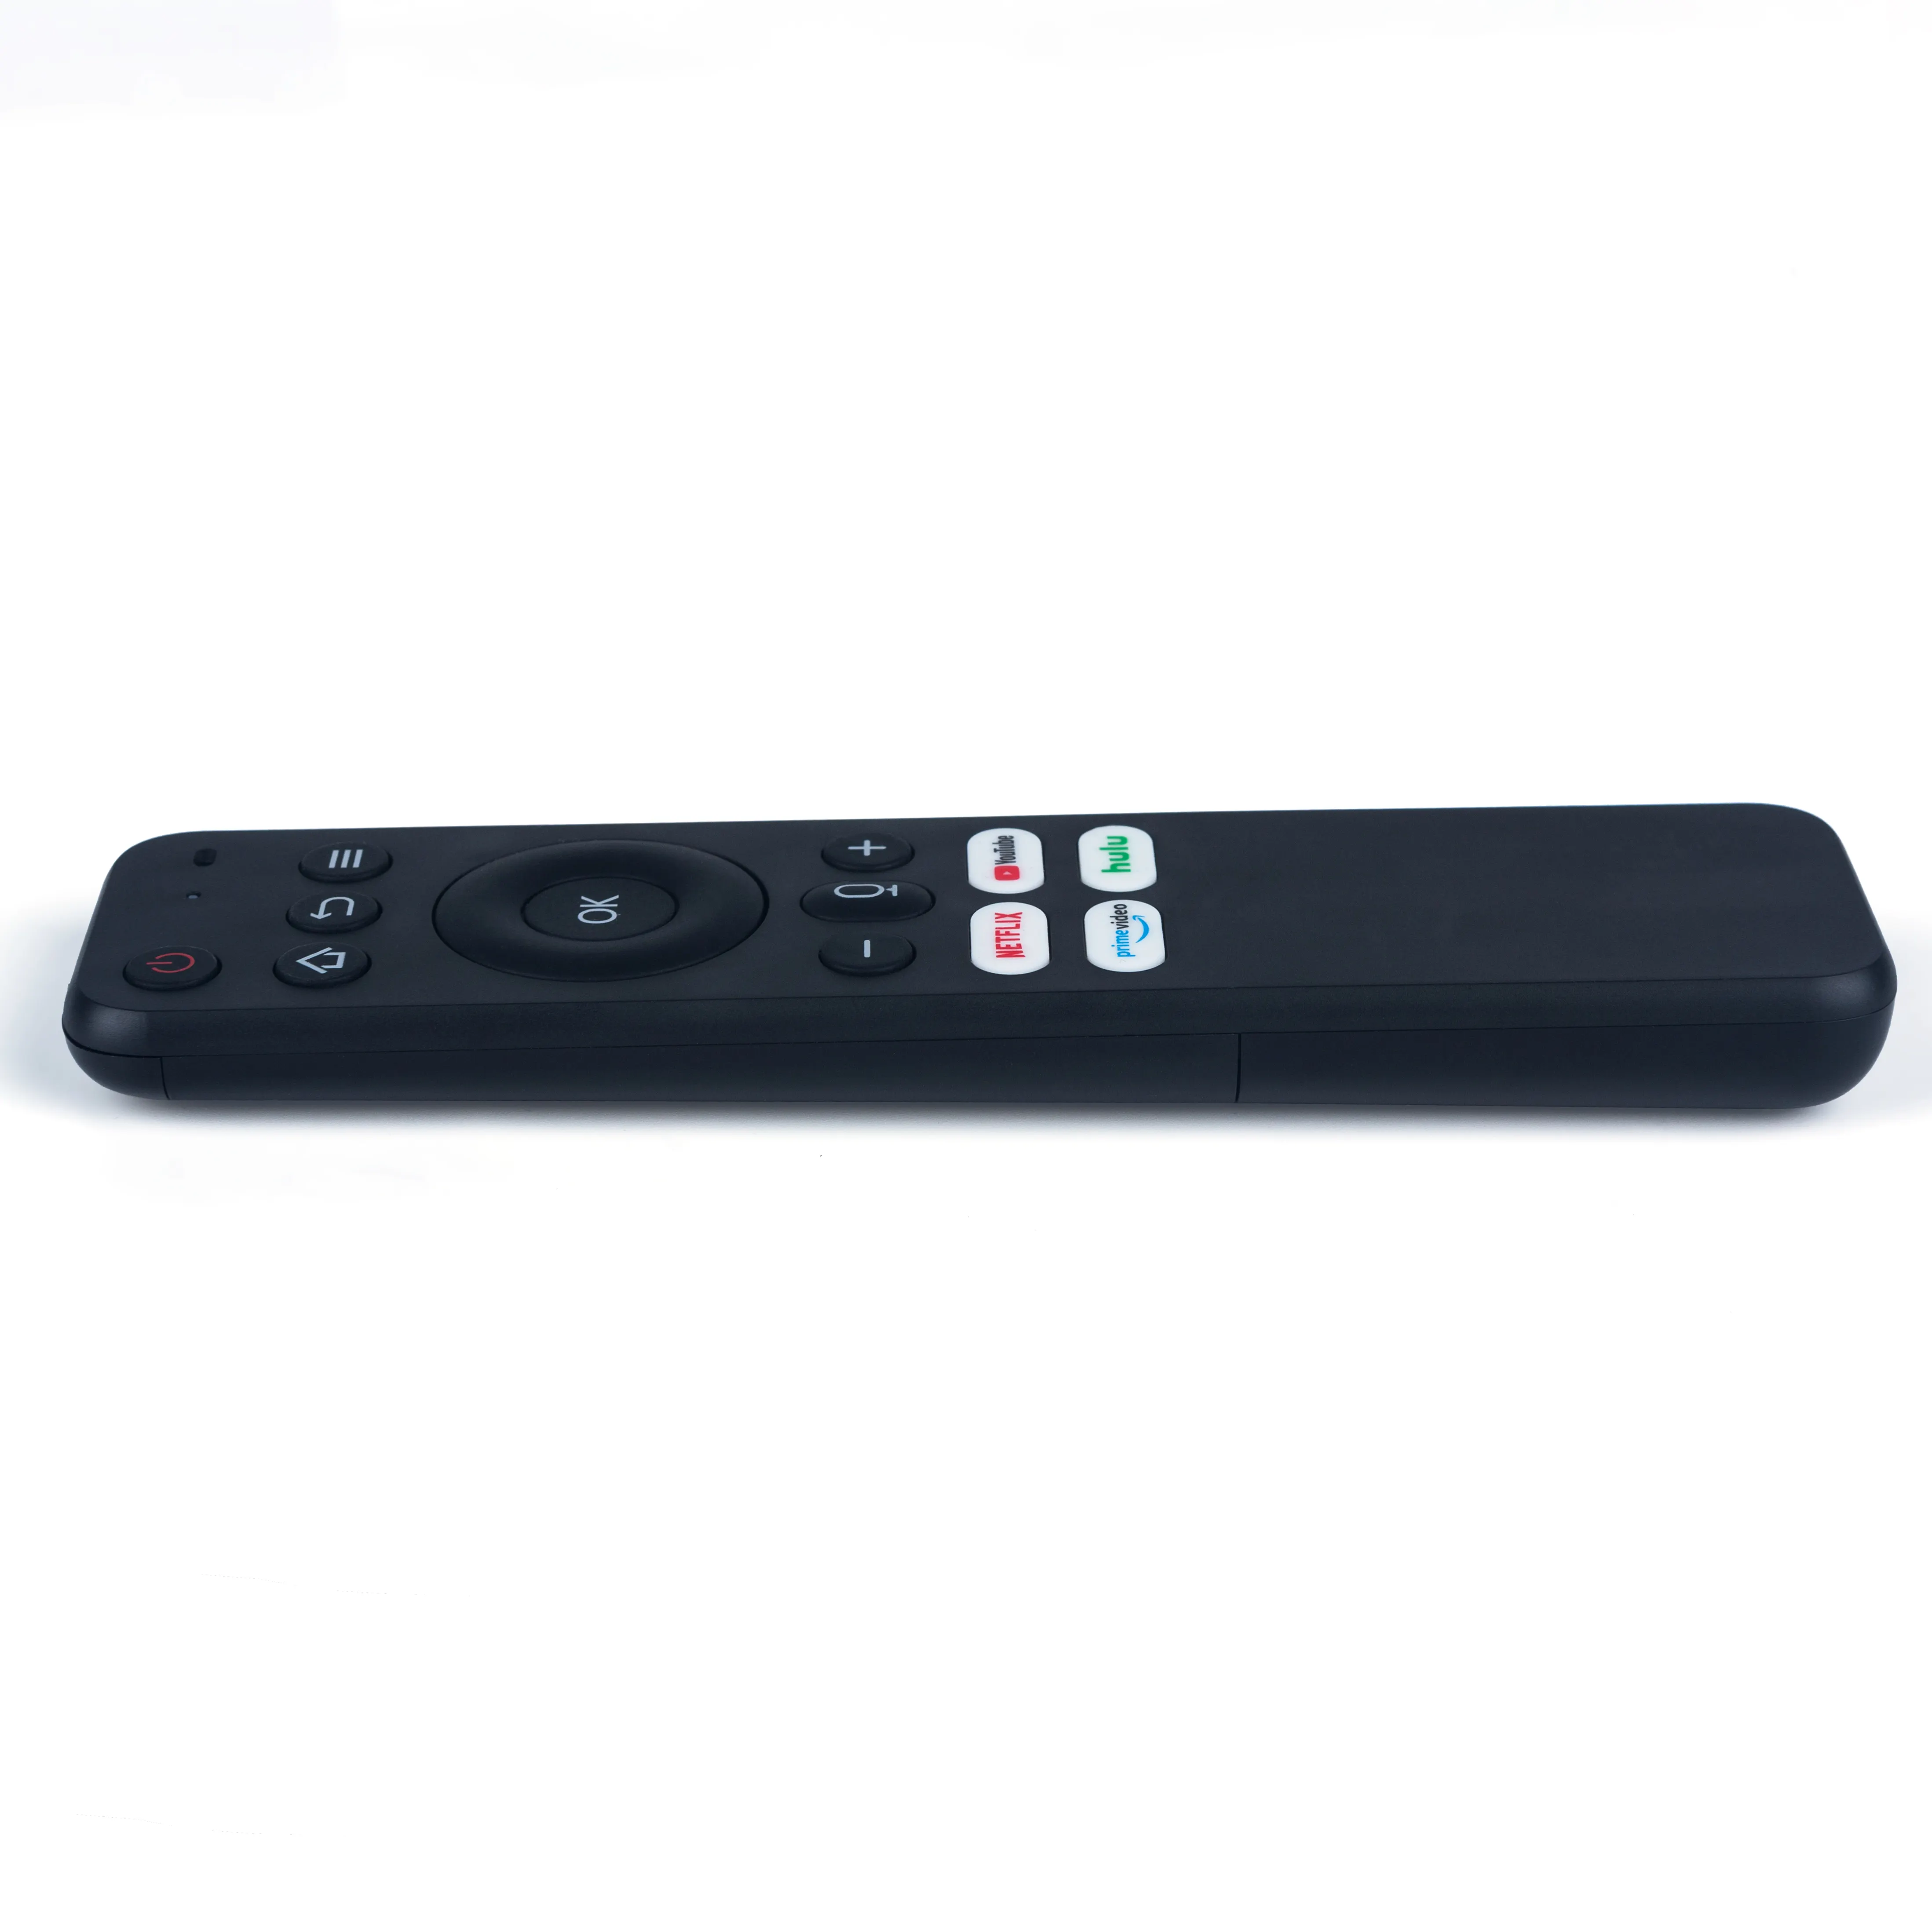 Remotes atacado fabricante inteligente preto personalizado tv controle remoto universal